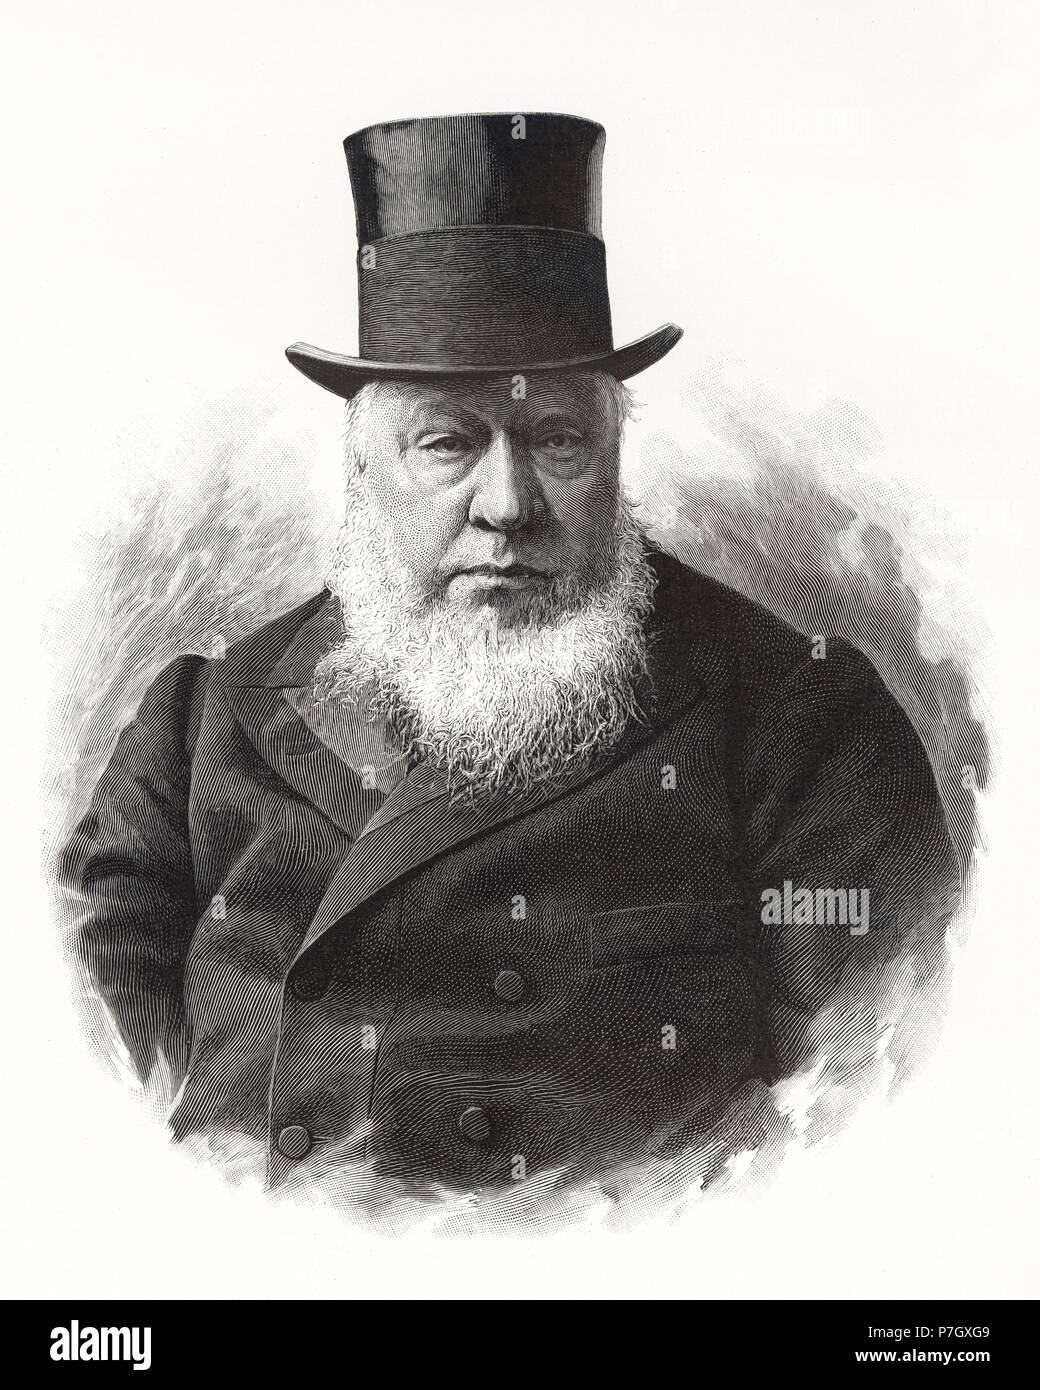 Kruger, Paul (1825-1904), líder de la resistencia boer y último presidente del Transvaal, en Sudáfrica. Grabado de 1902. Stock Photo